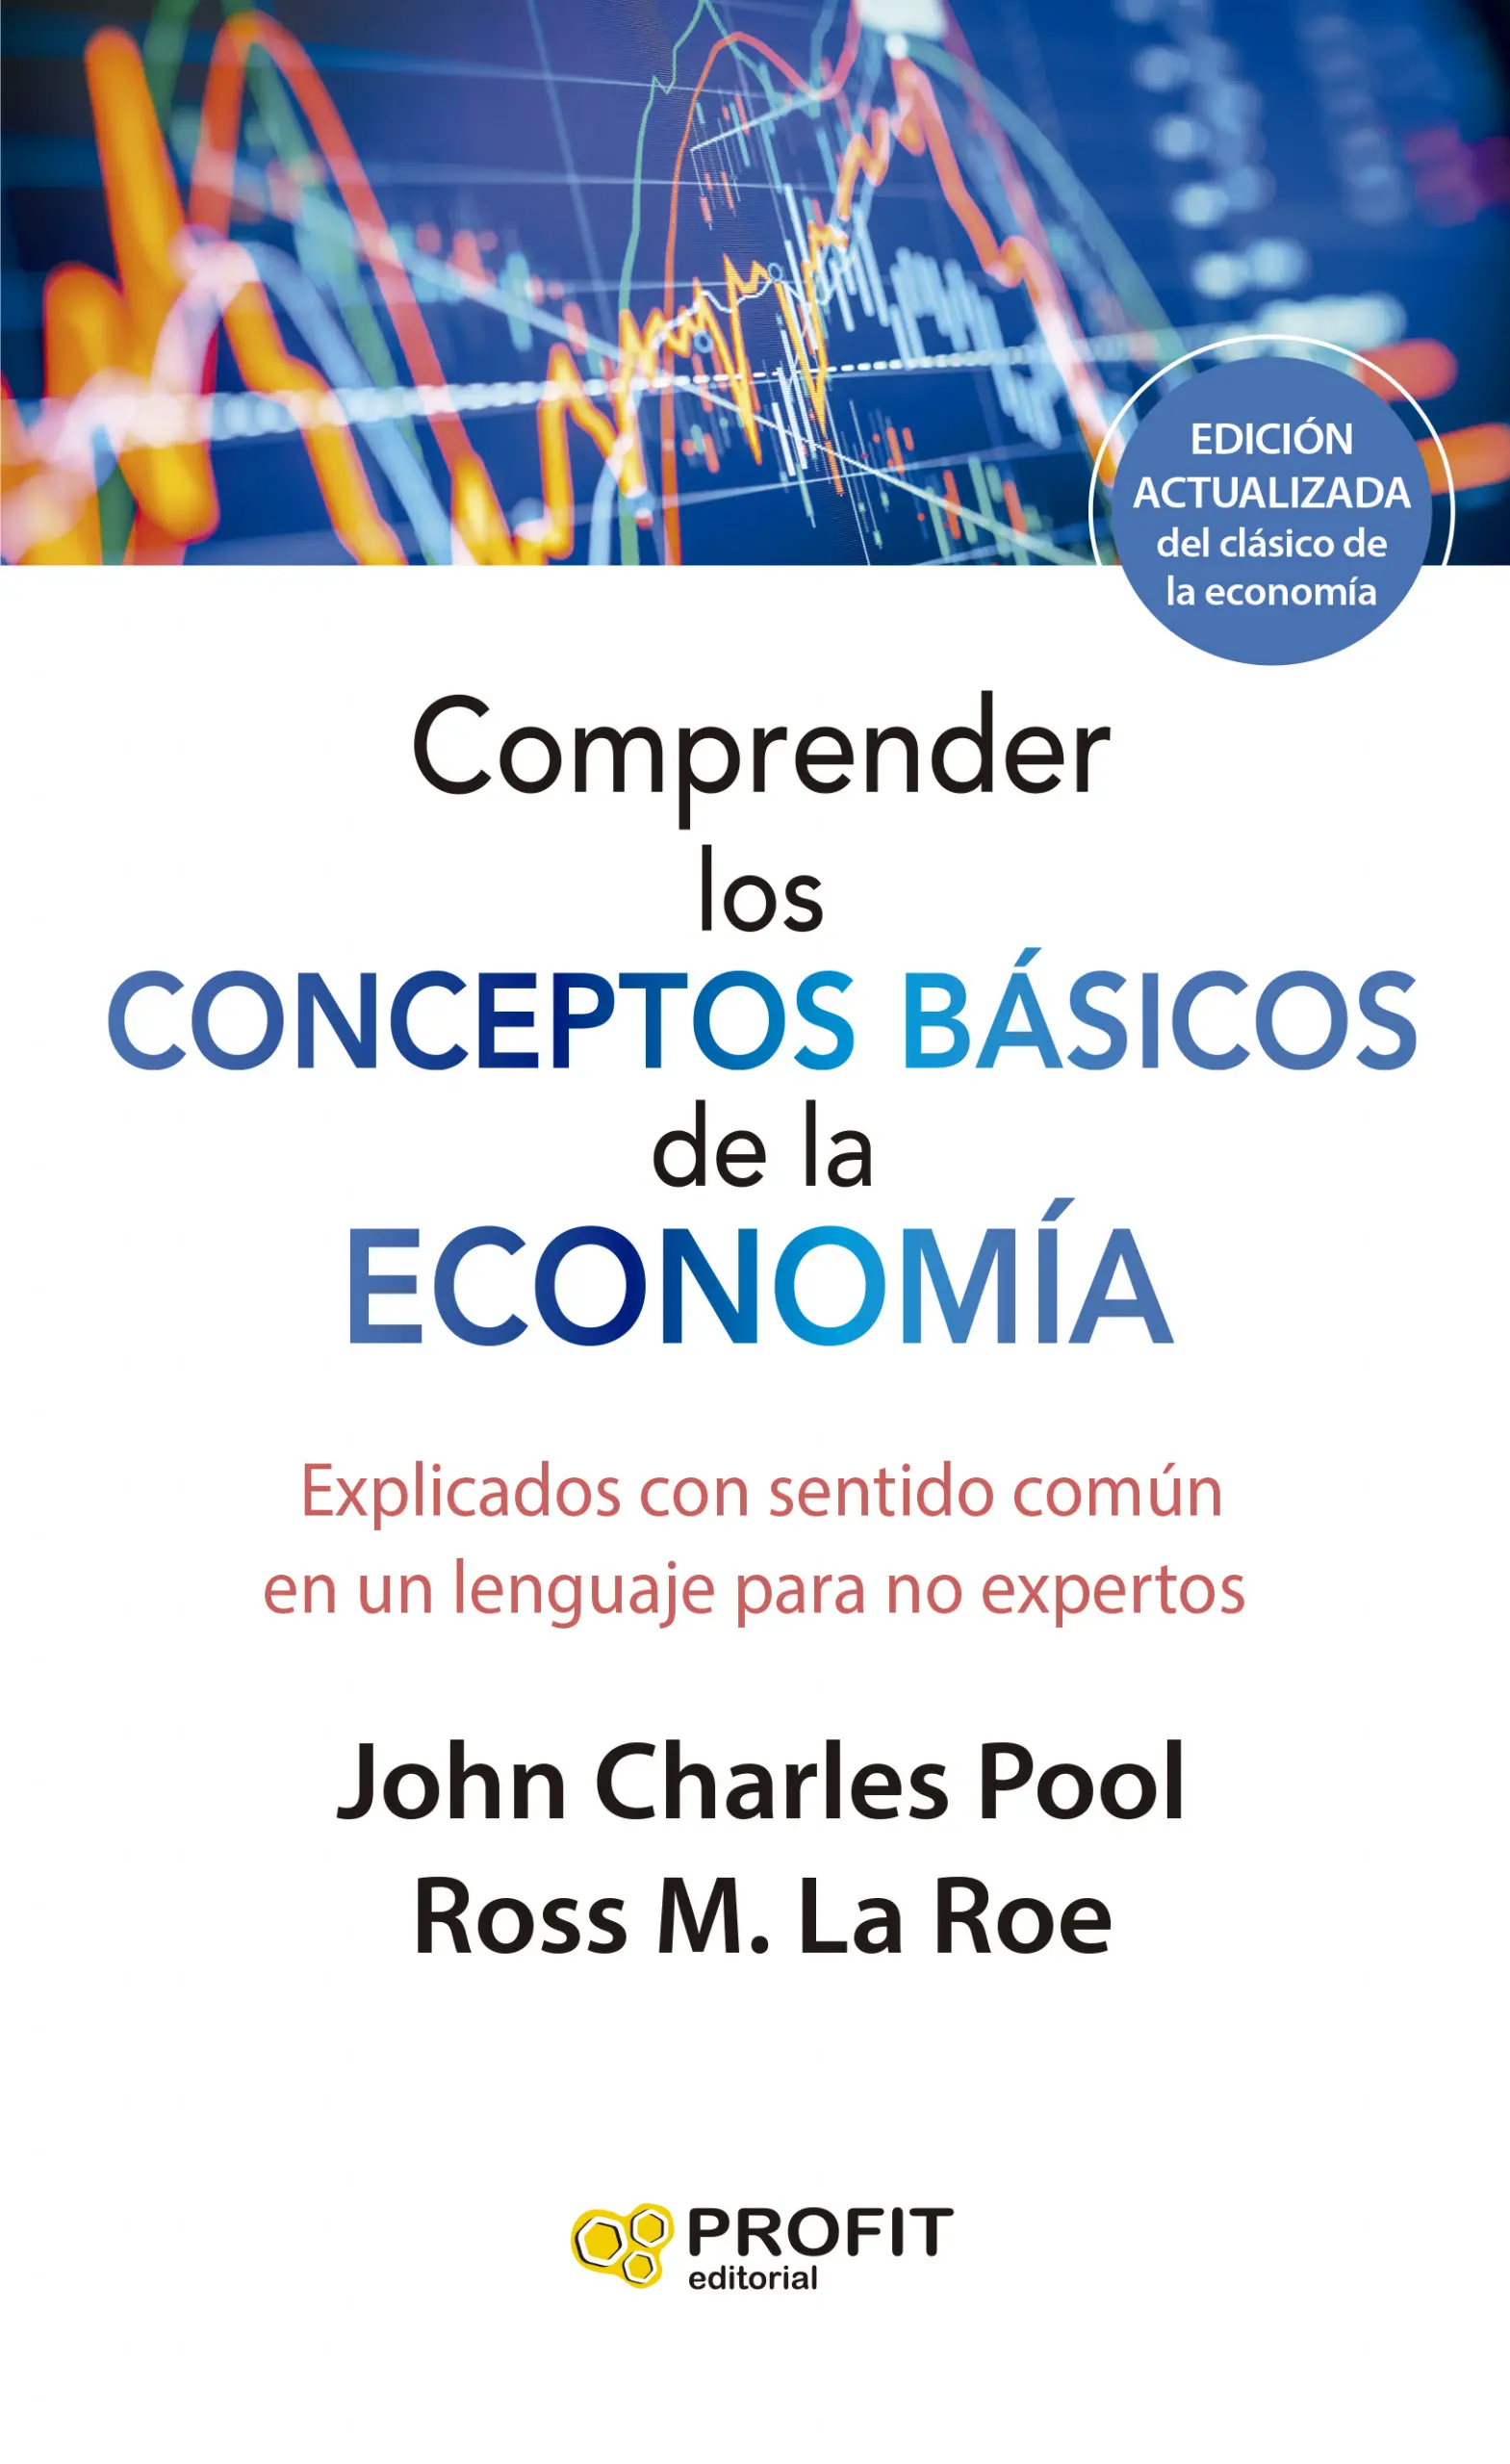 Comprender los conceptos básicos de la economía | Ross M. LaRoe | Libros de empresa y negocios